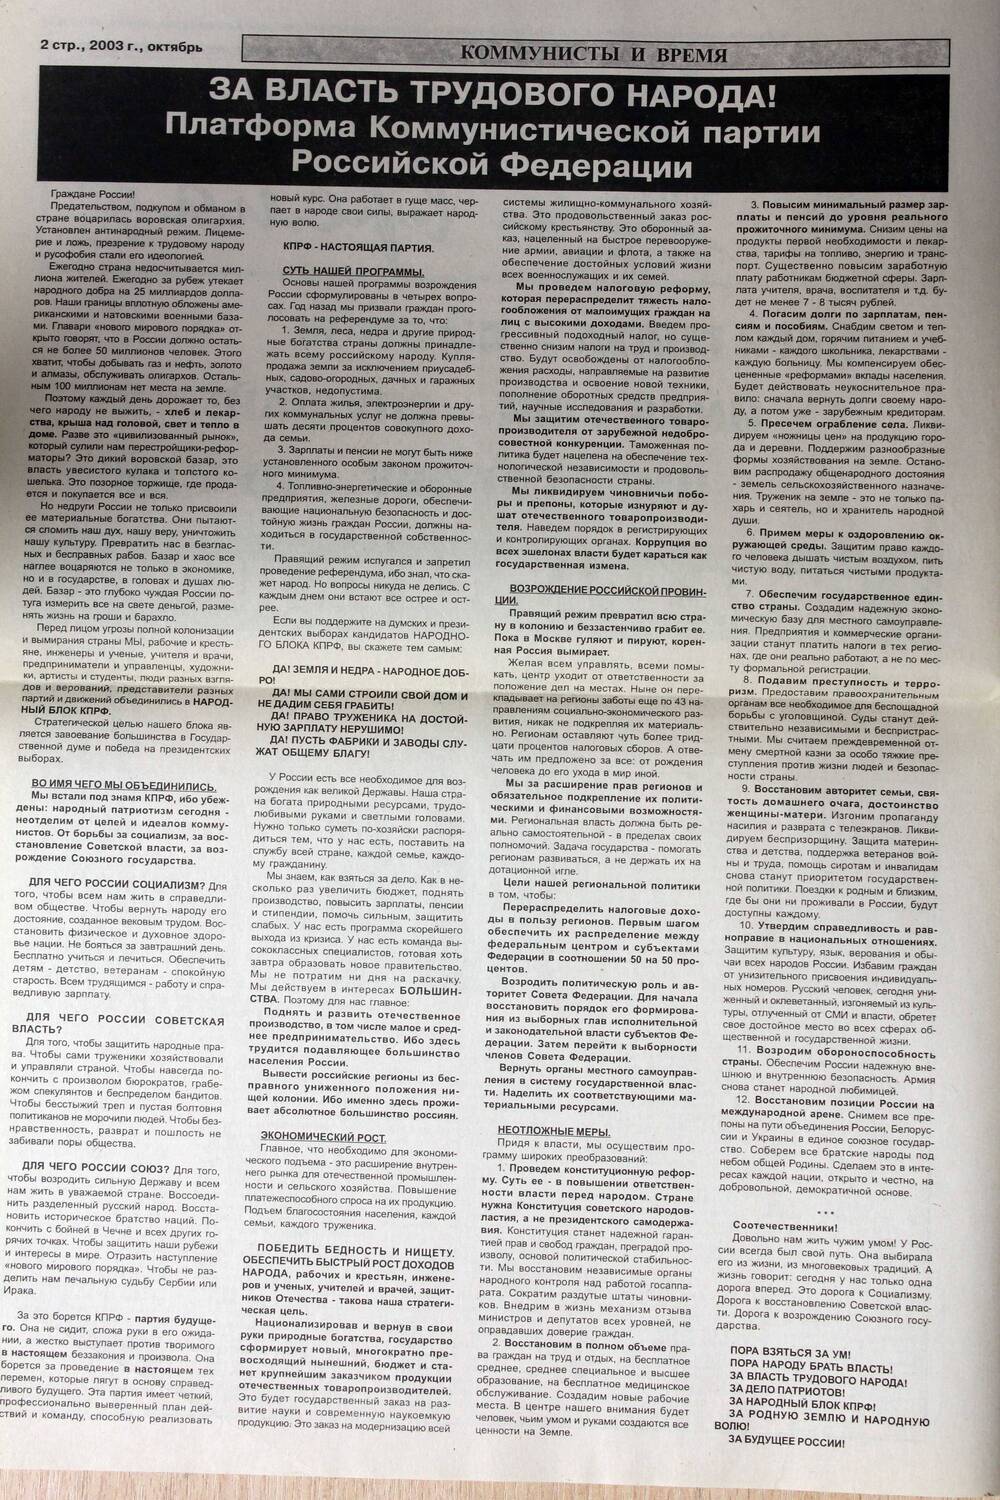 Бюллетень информационный КПРФ Коммунисты и время, изданный к выборам Государственной  Думы  2003 года. Подлинник